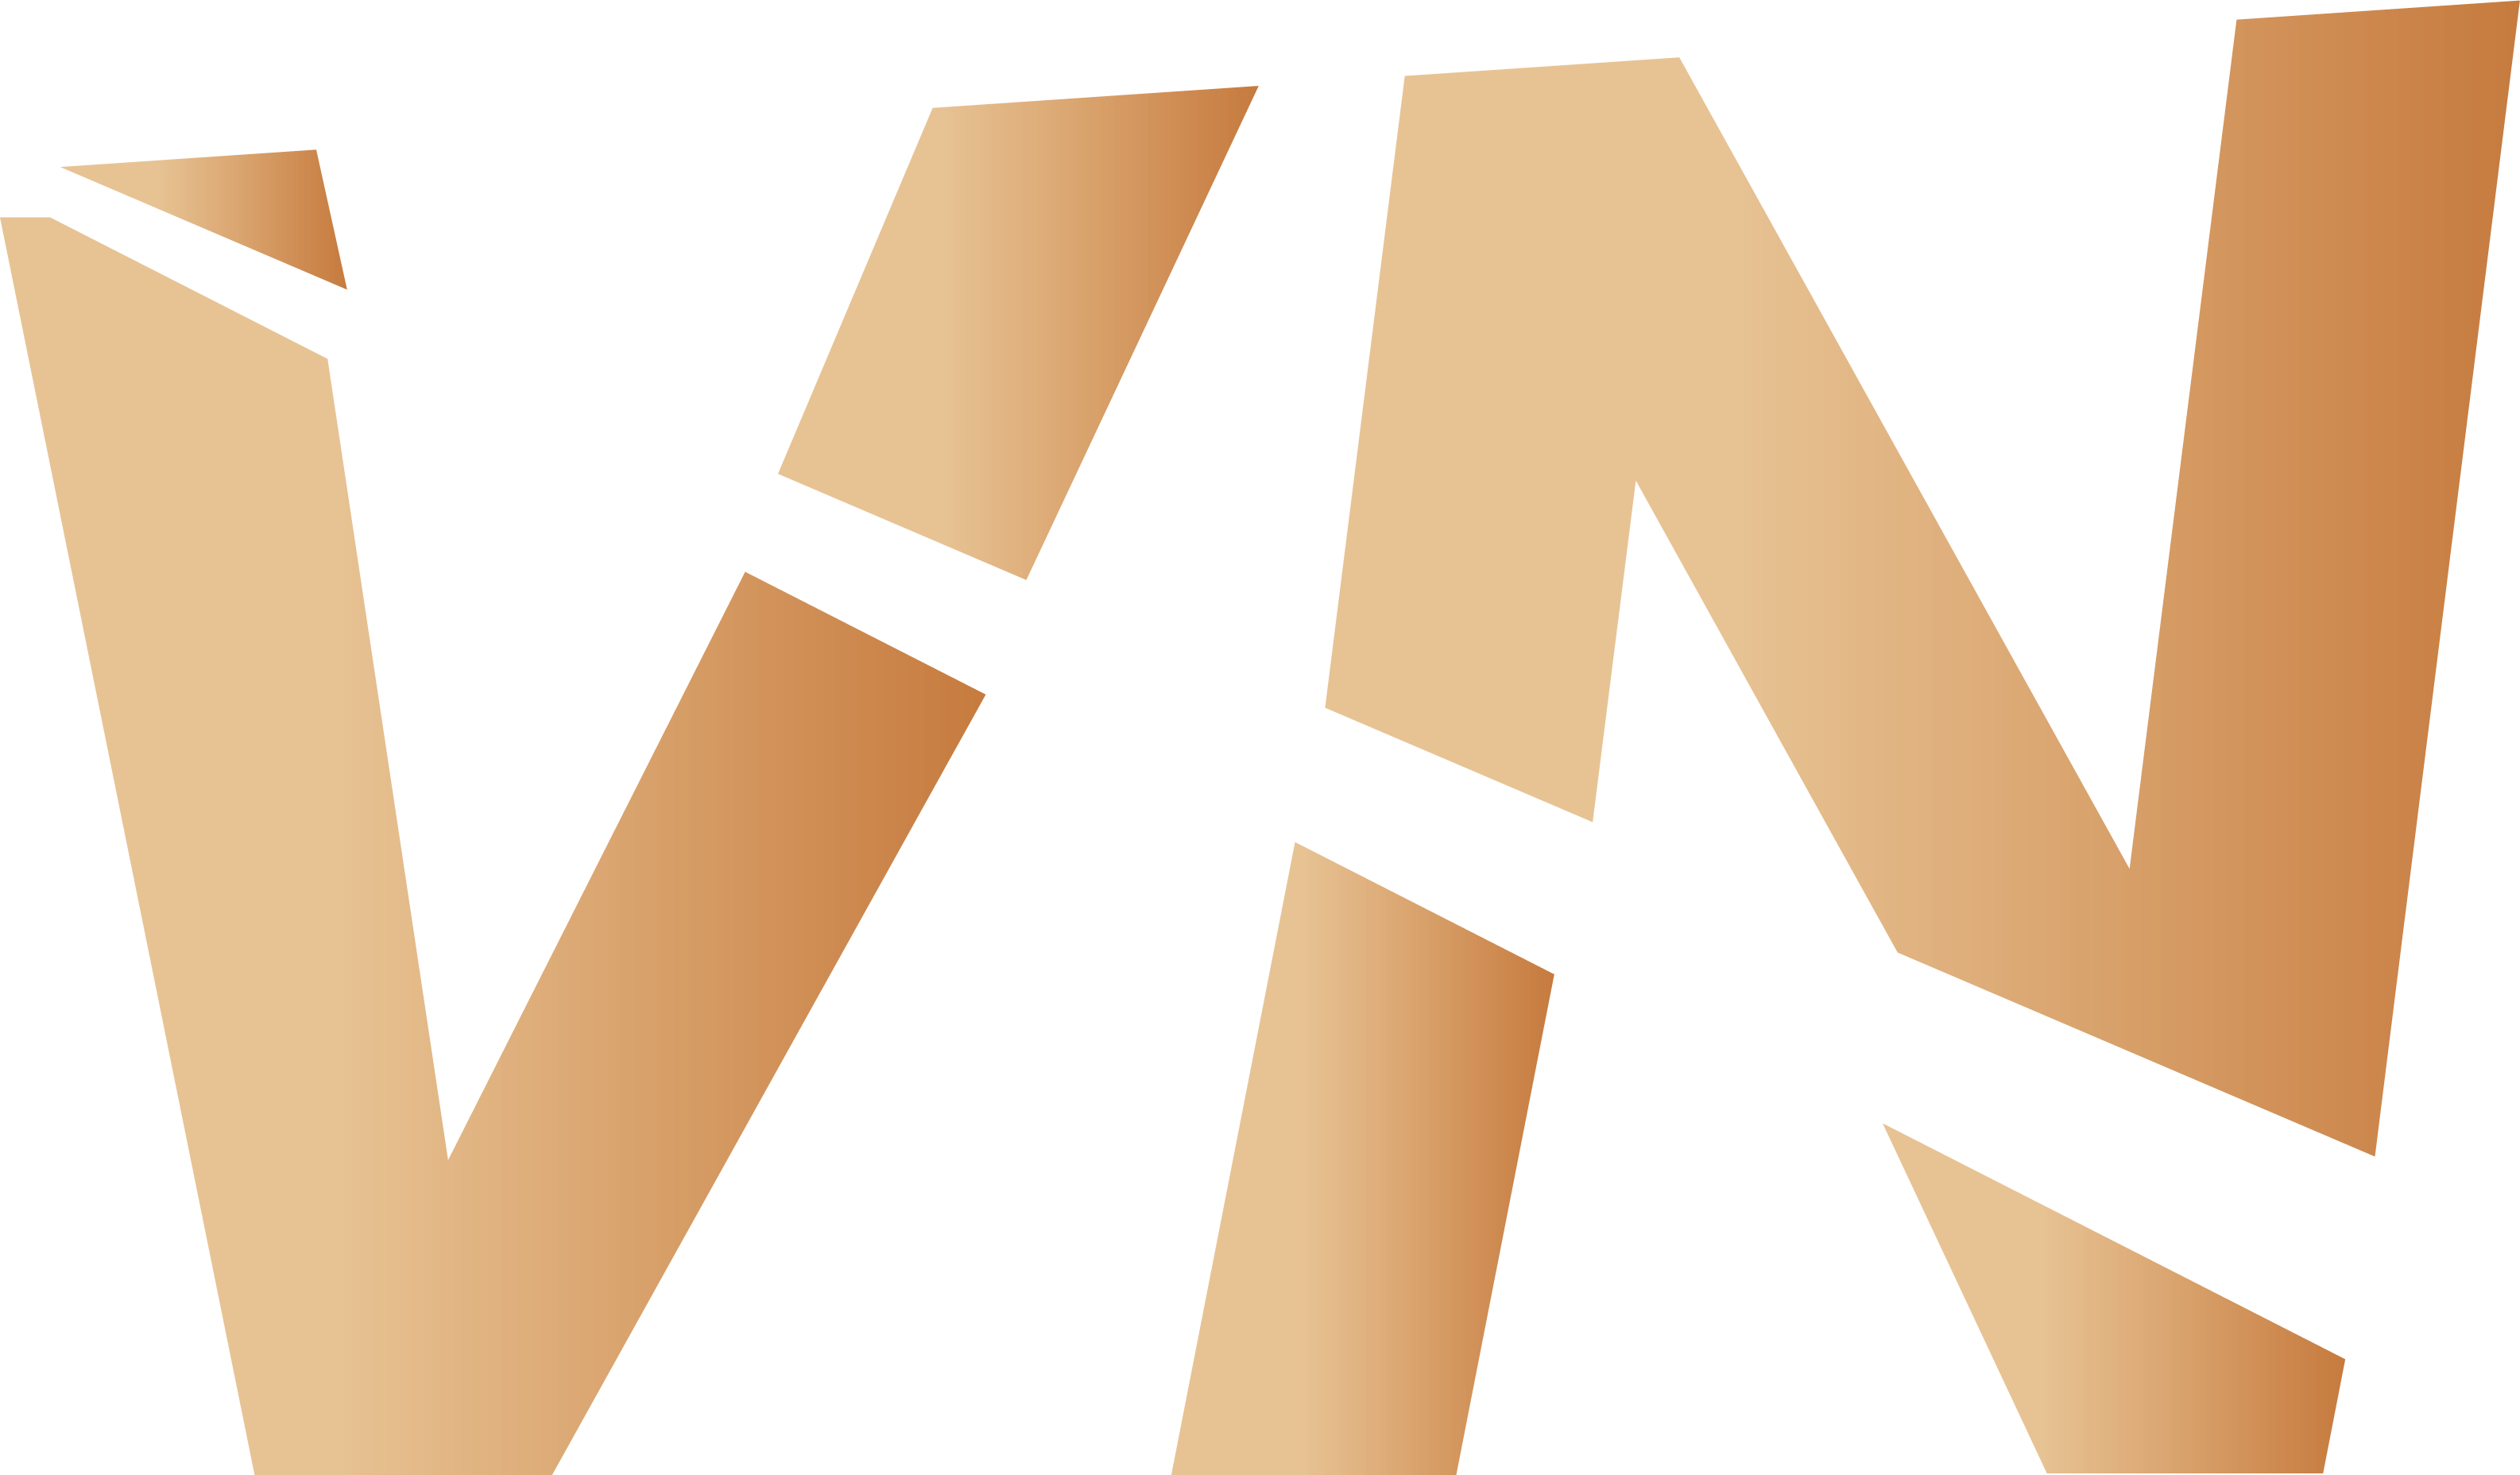 VN logo